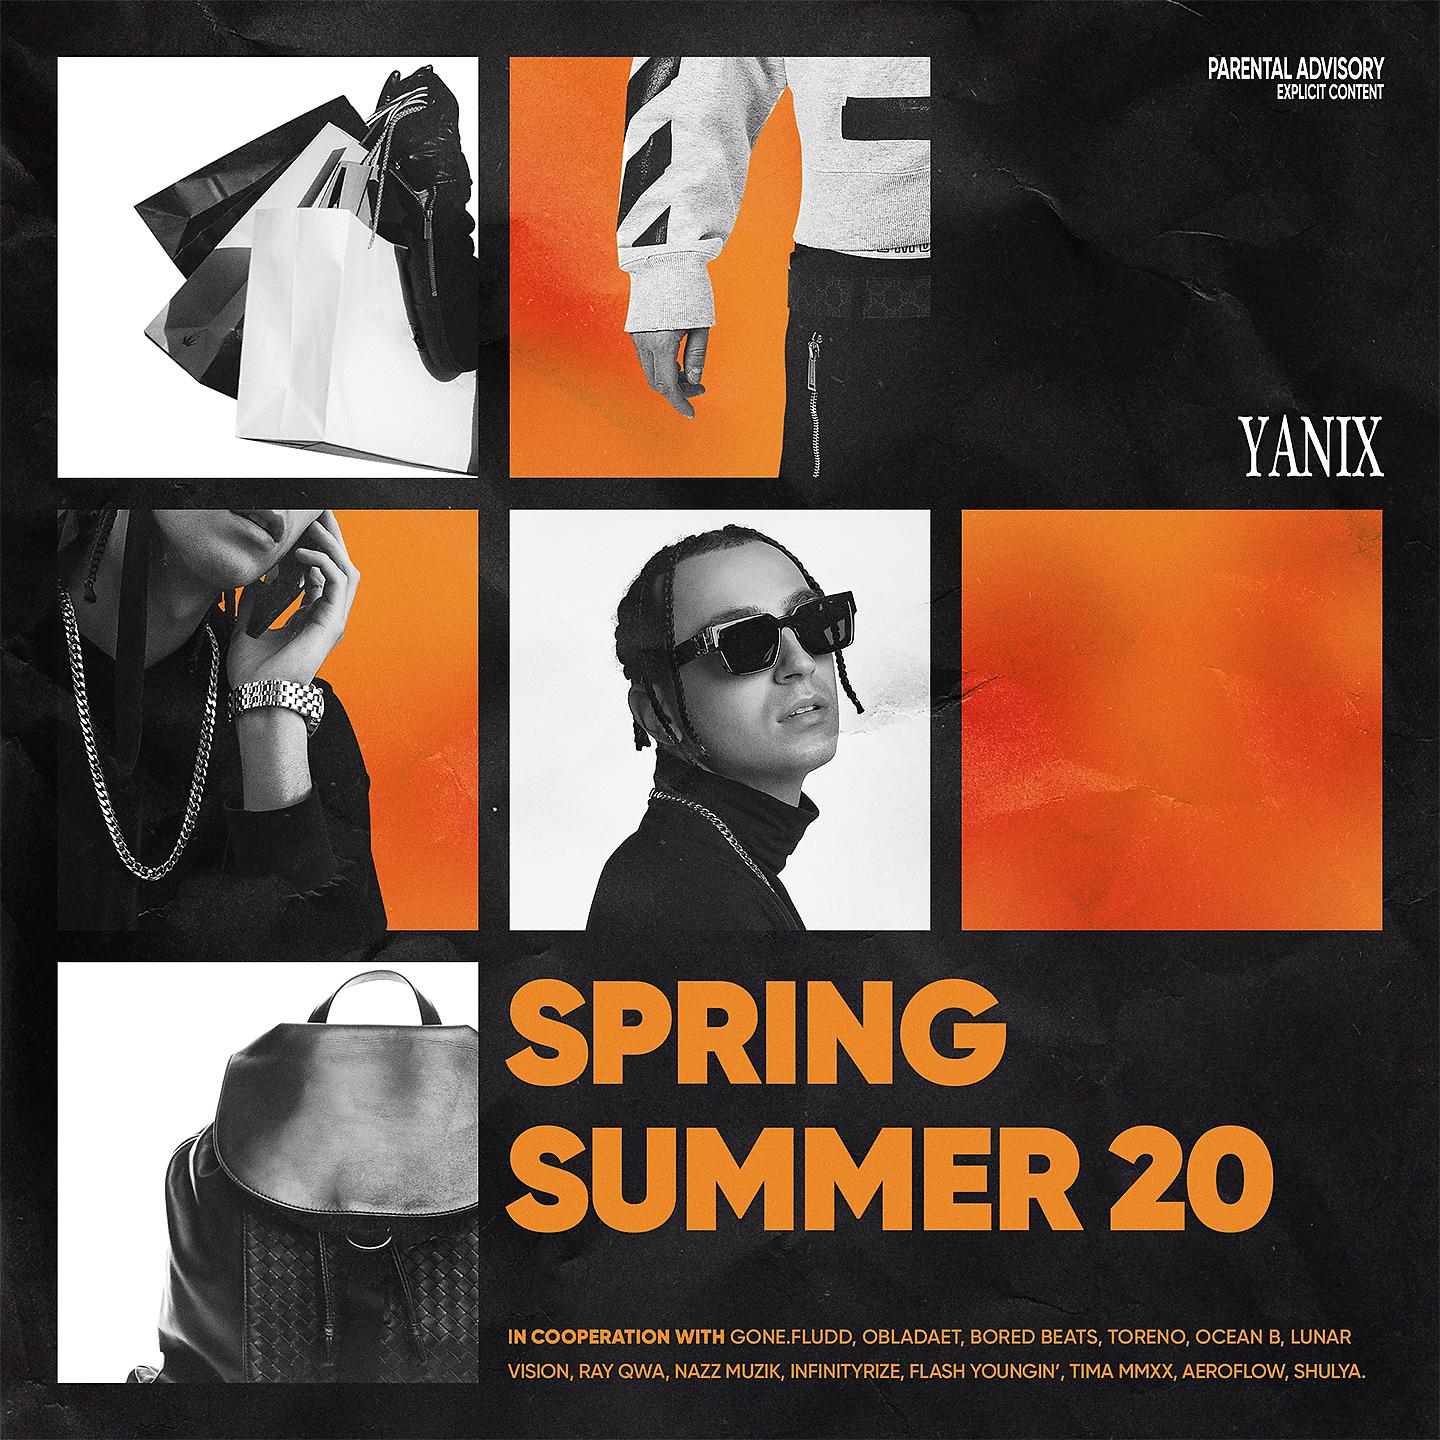 Яникс первый текст. Yanix рэпер 2021. Яникс 2022. Ss20 яникс обложка. Yanix обложка альбома.